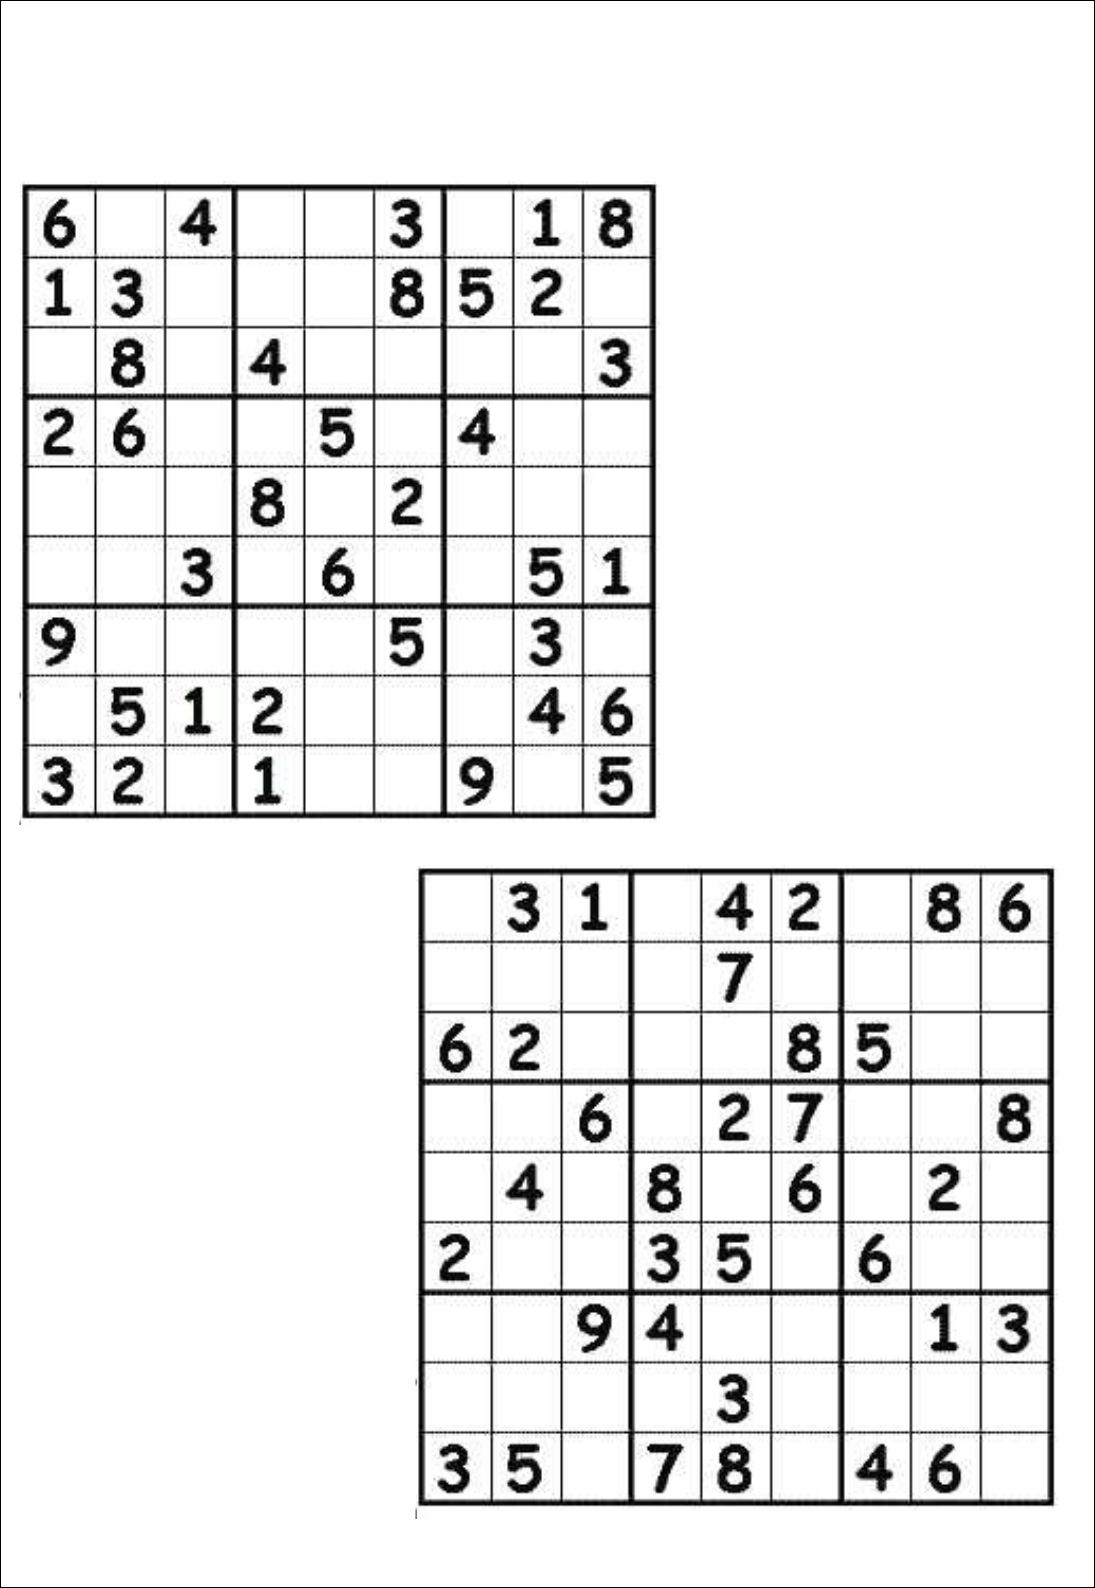 Método Supera - #Exercíciododia: Sudoku Fácil Preencha os números de forma  que não haja repetição na mesma linha, coluna ou quadradinho.